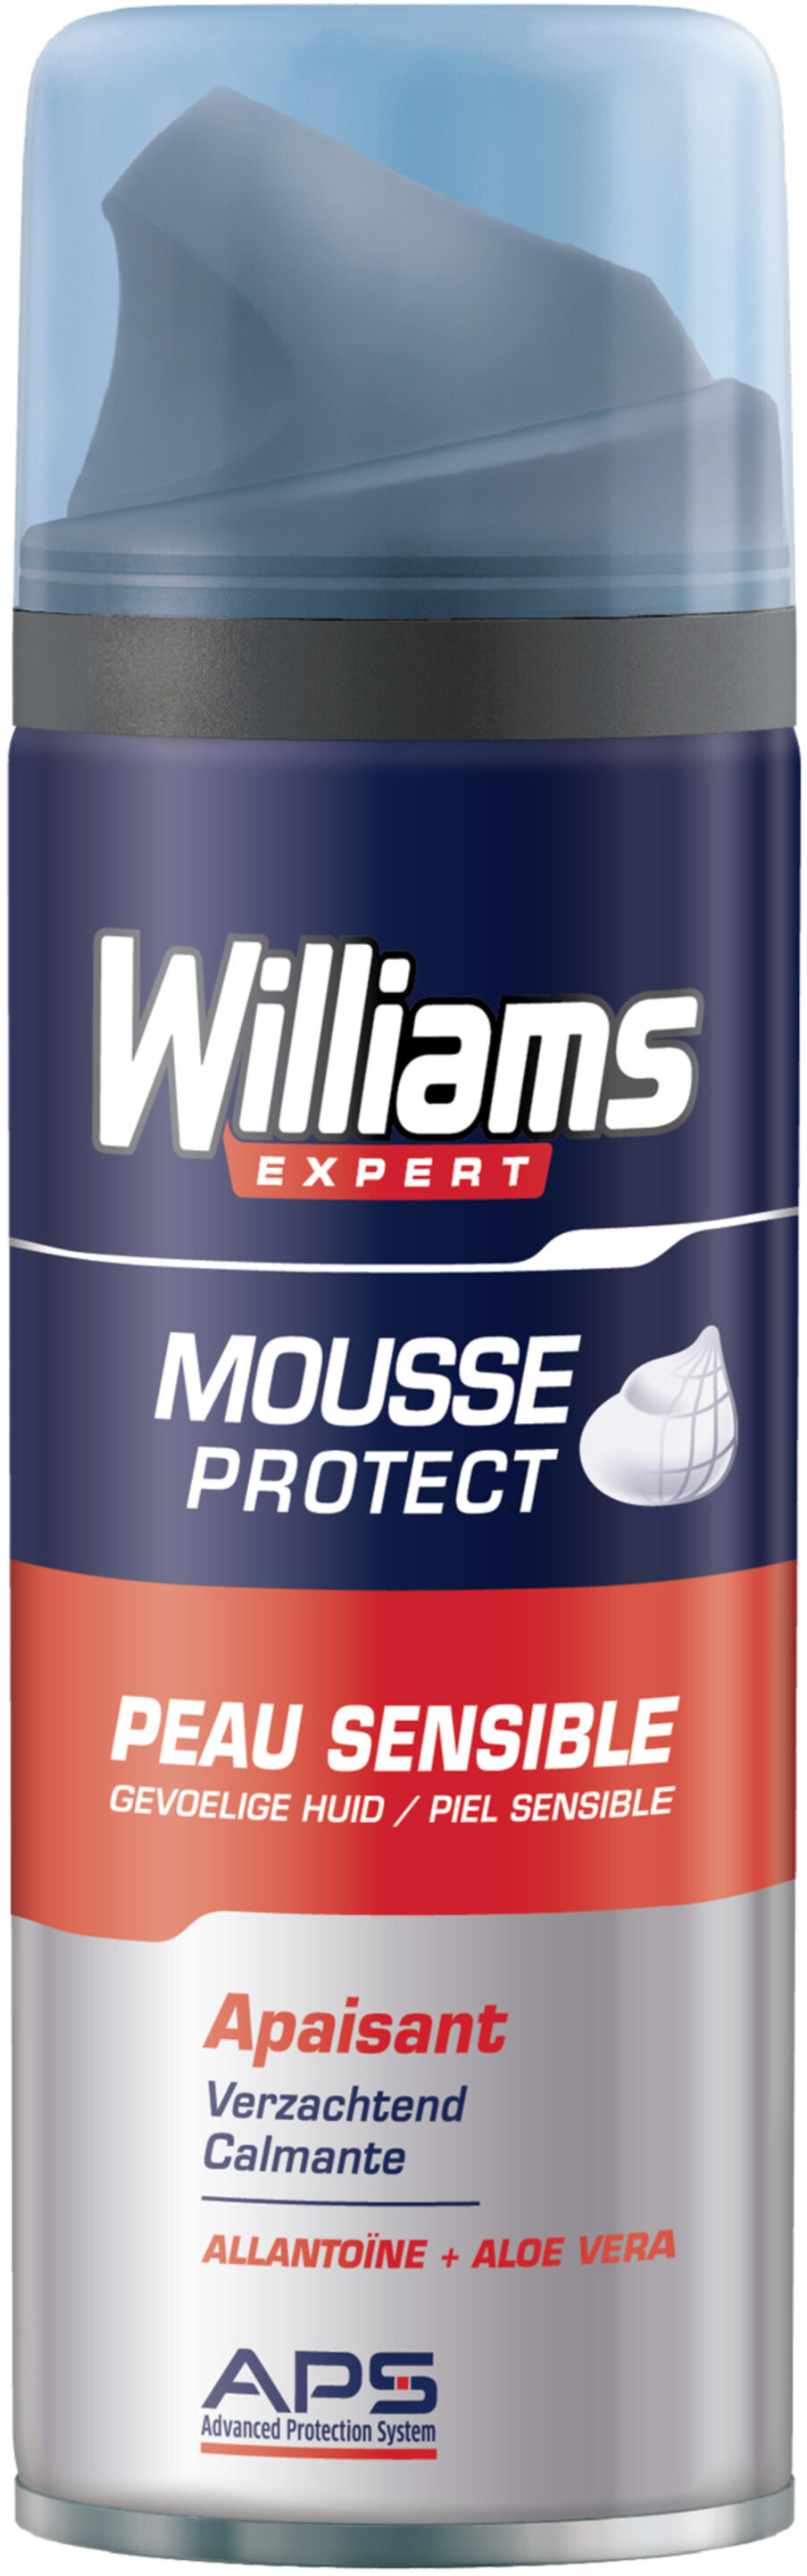 Williams Mousse à Raser Homme Peau Sensible 200ml - Product - fr